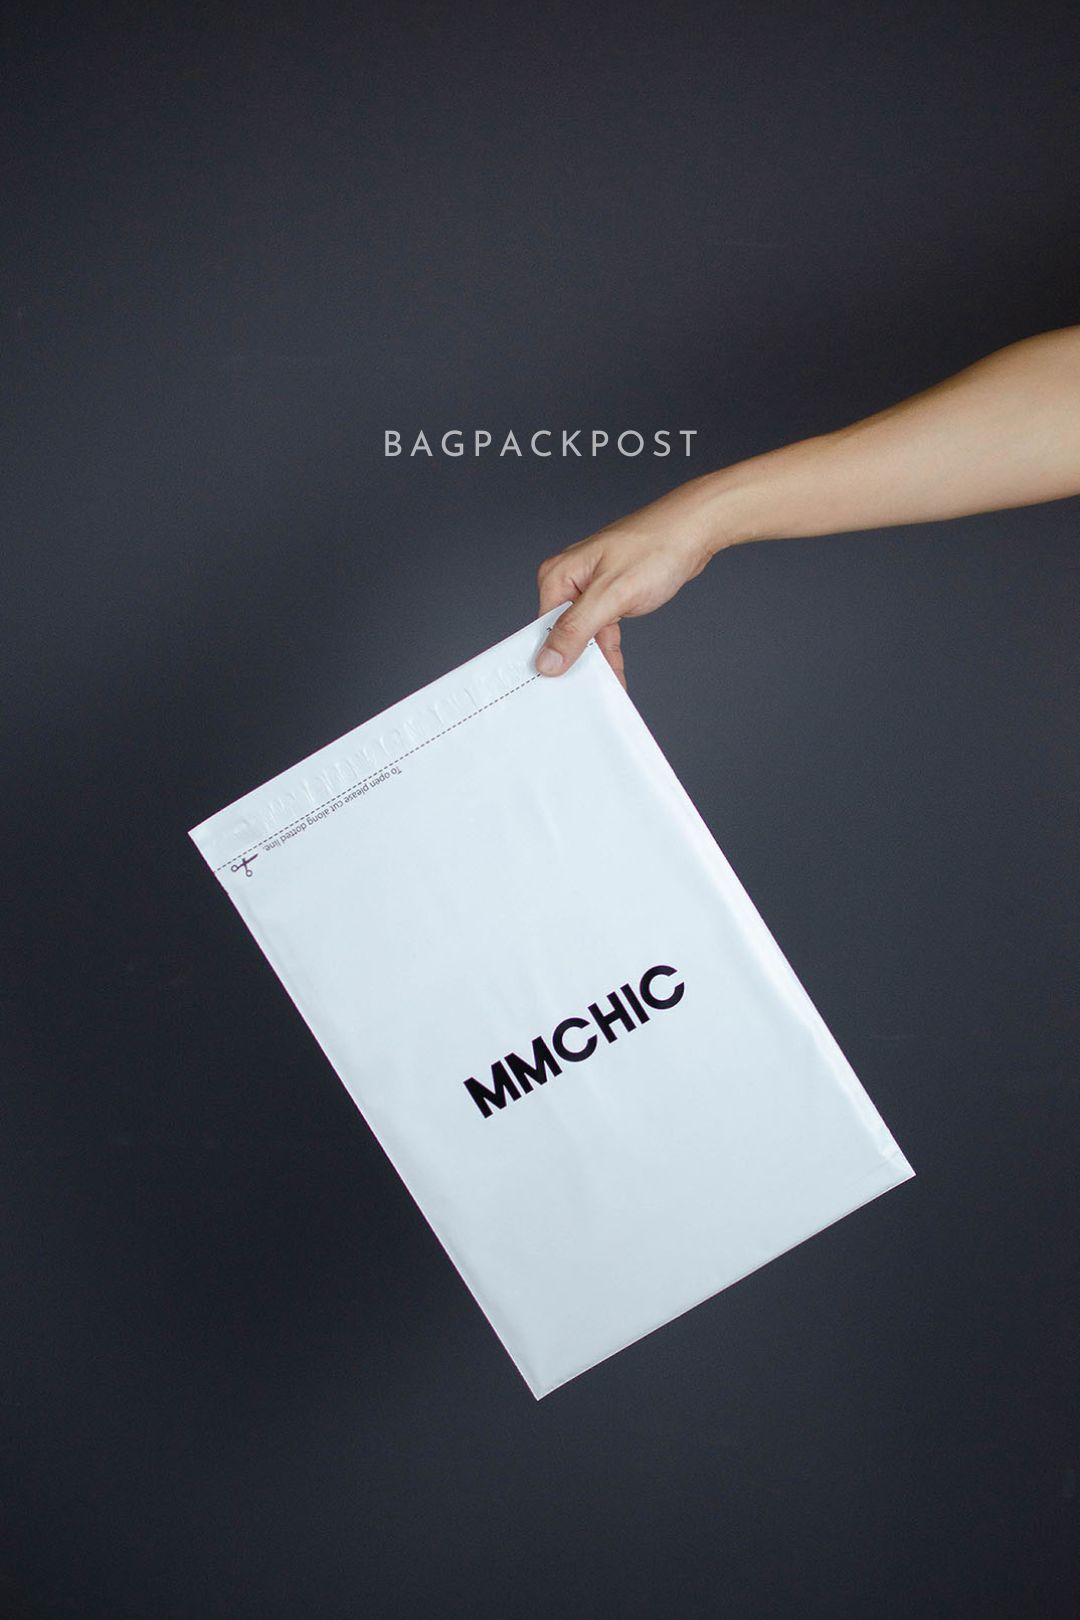 ผลิตถุงไปรษณีย์ ซองไปรษณีย์พิมพ์ลาย mmchic ซองไปรษณีย์สีขาว ถุงไปรษณีย์พิมพ์ลาย 5 BagPackPost